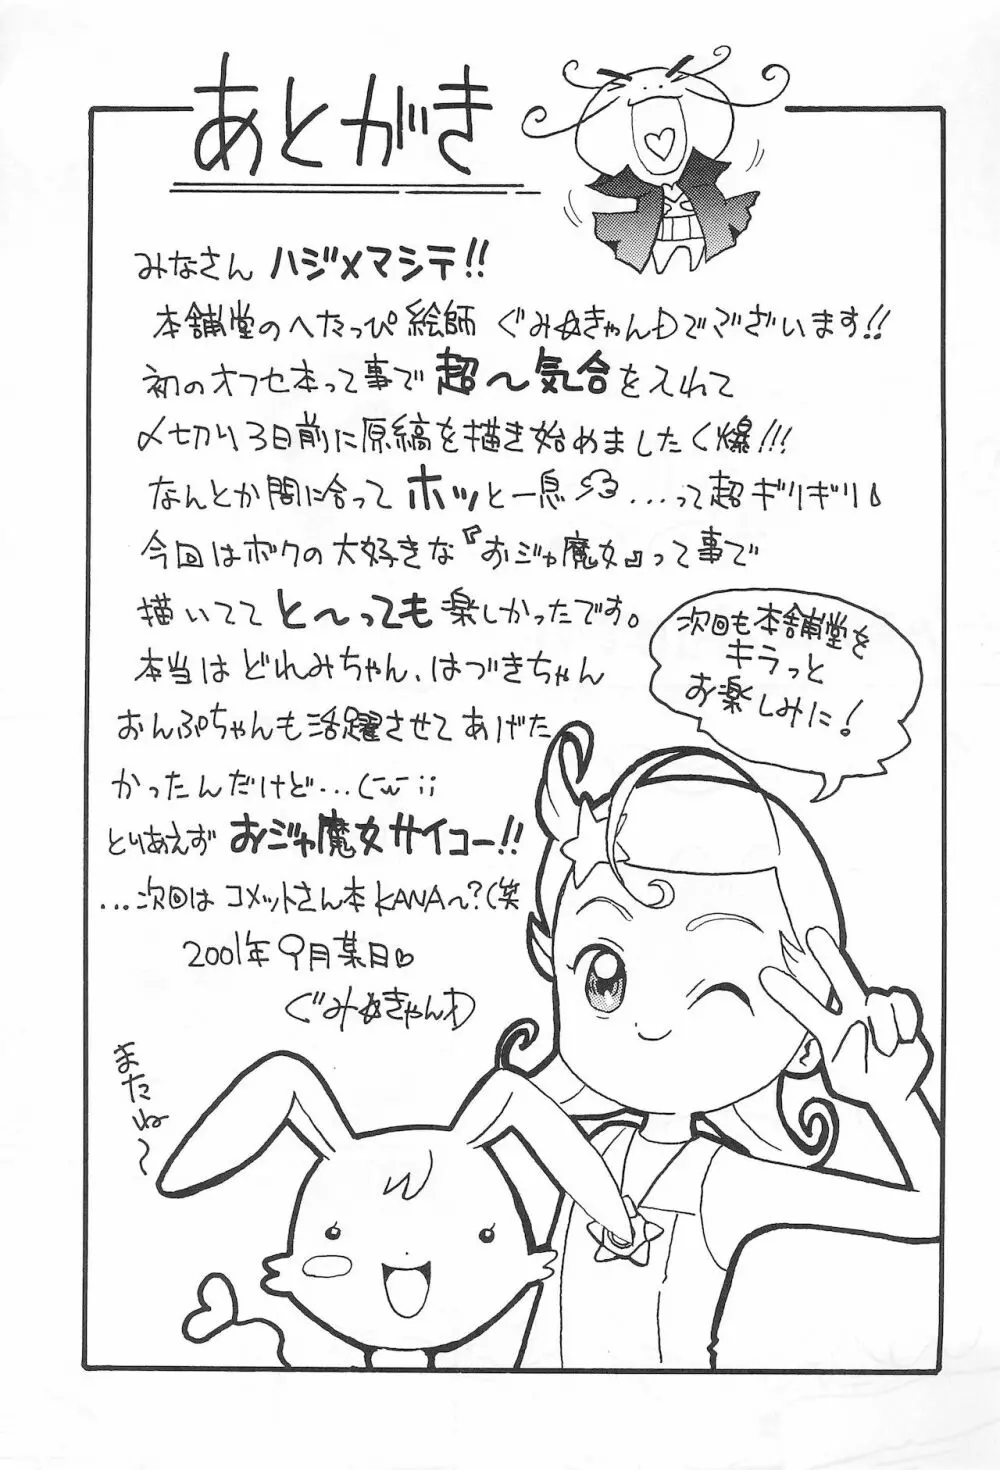 本舗堂2001 秋号 ちぃさいから出来る事 15ページ